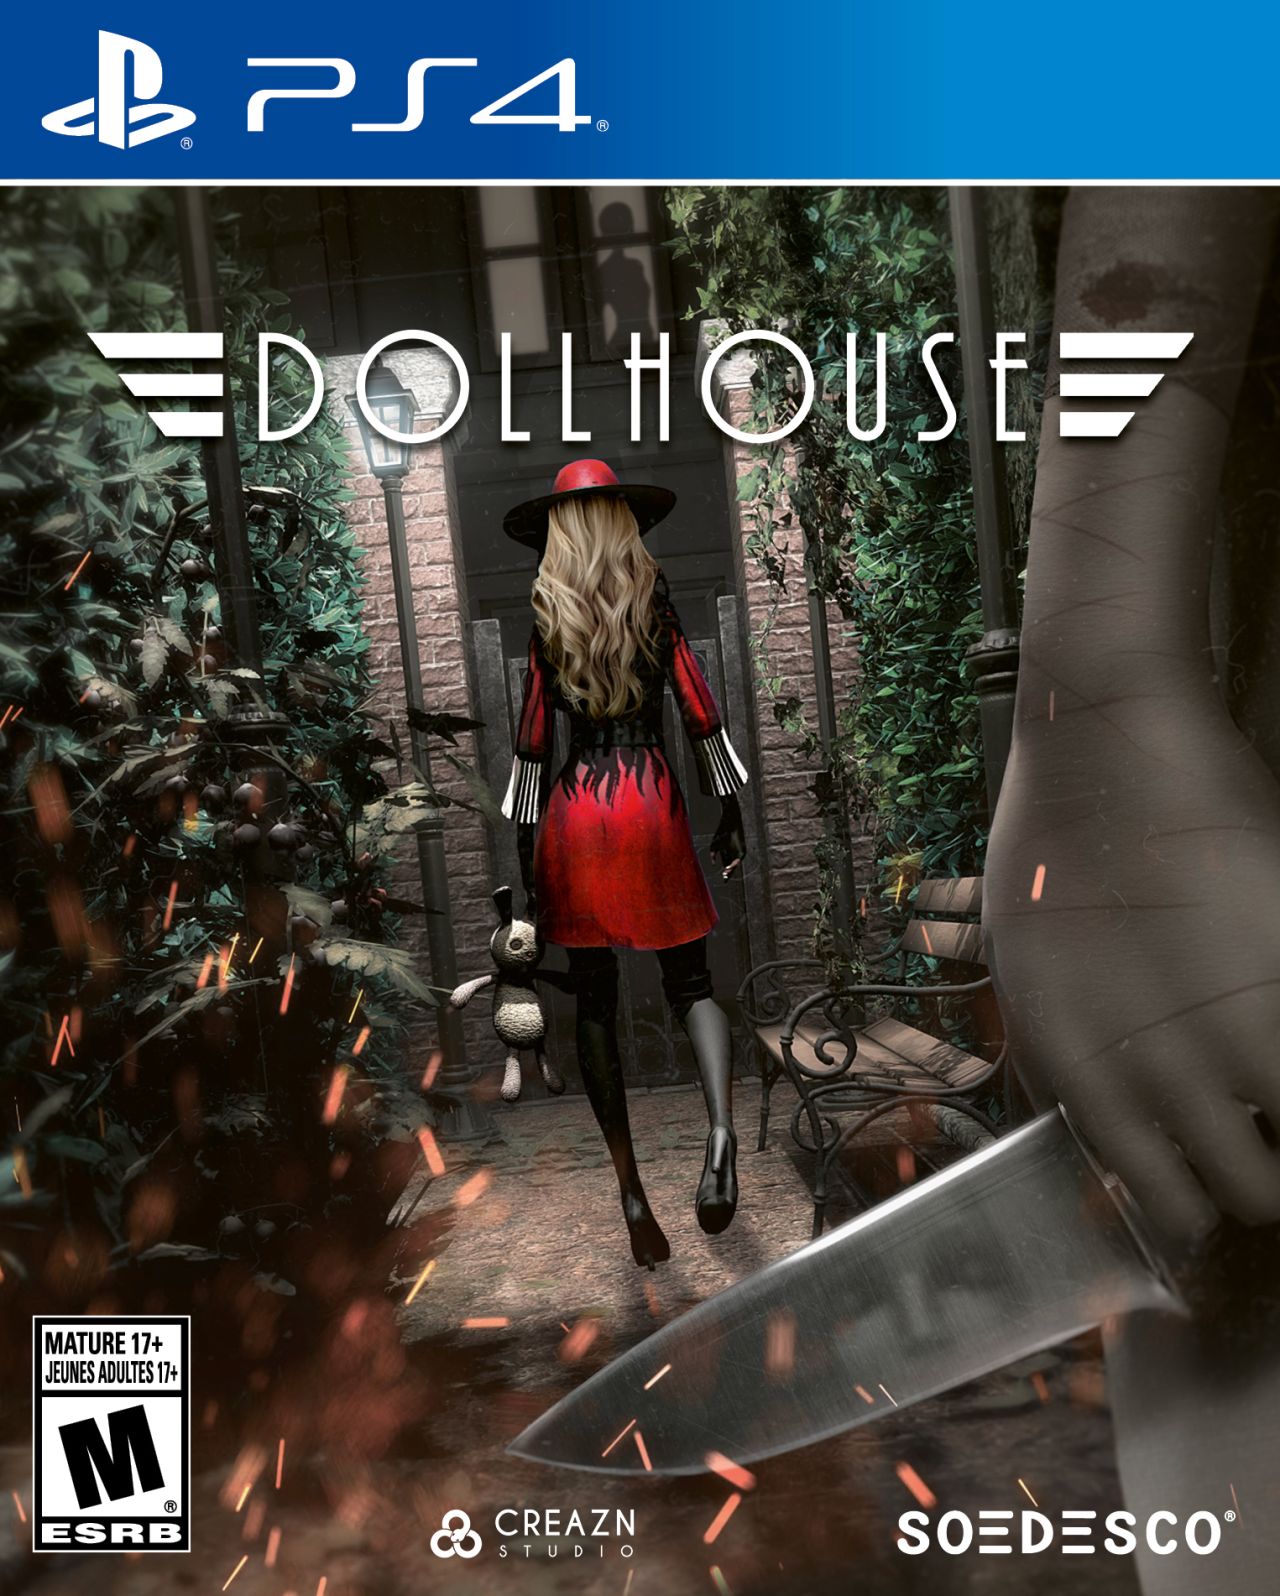 Dollhouse, il gioco horror di Soedesco, arriverà per PS4 e PC nel 2019